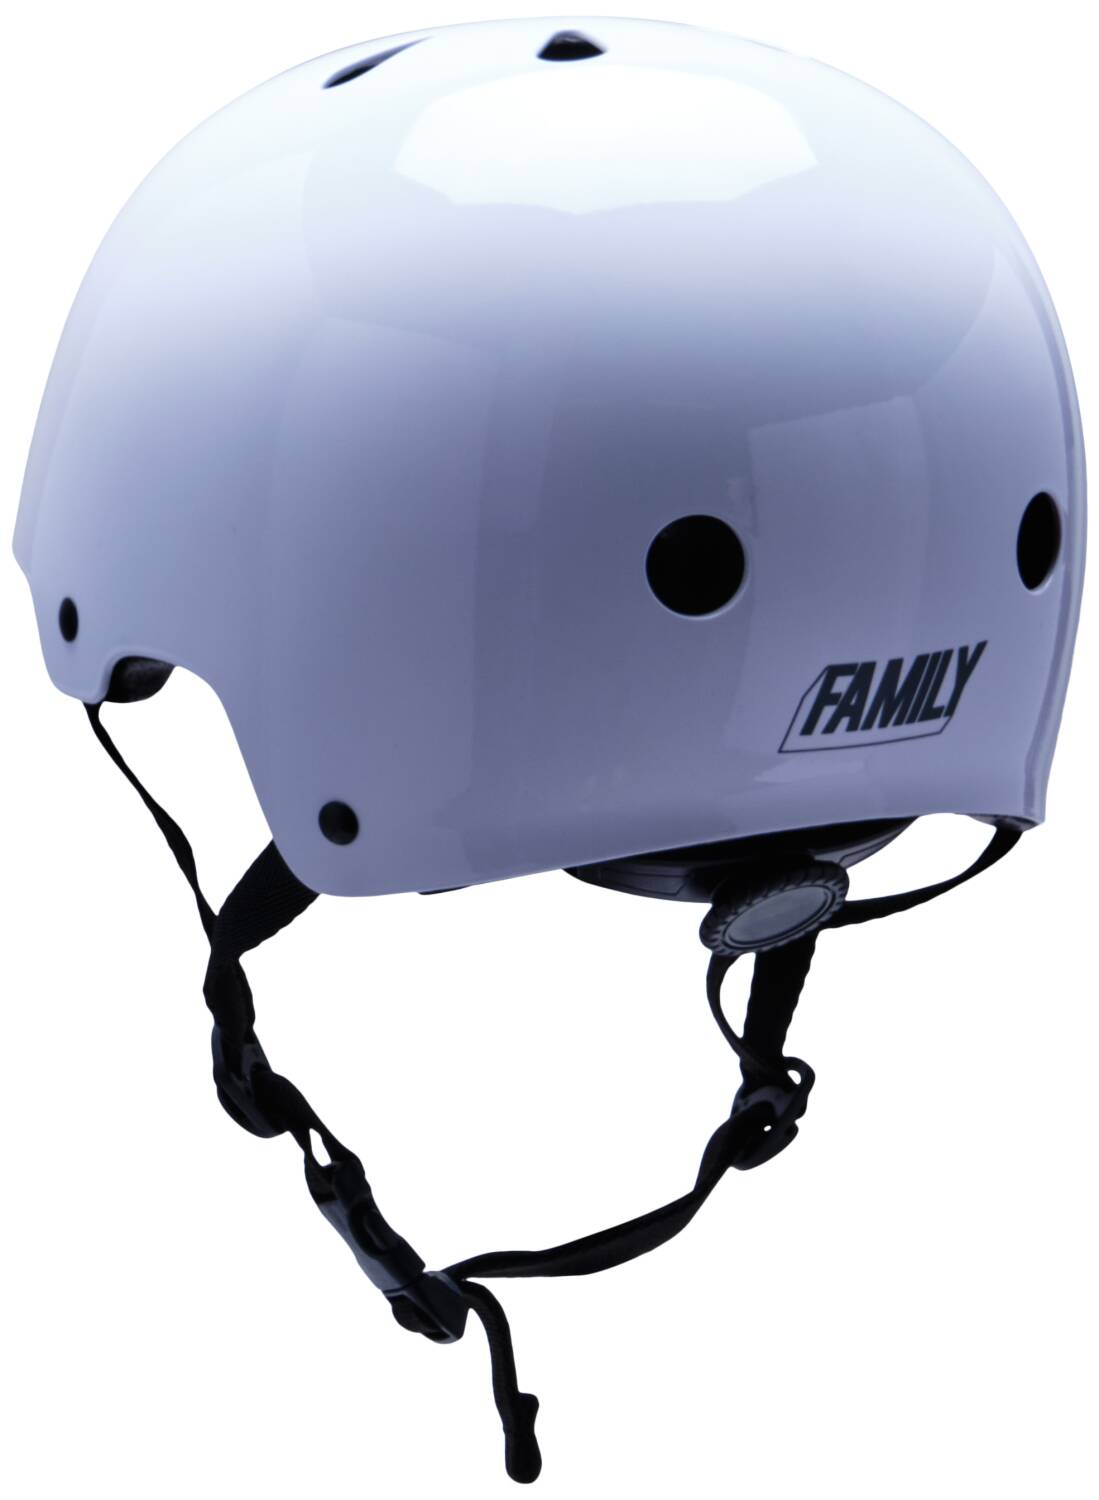 Family adjustable glossy white skate helmet